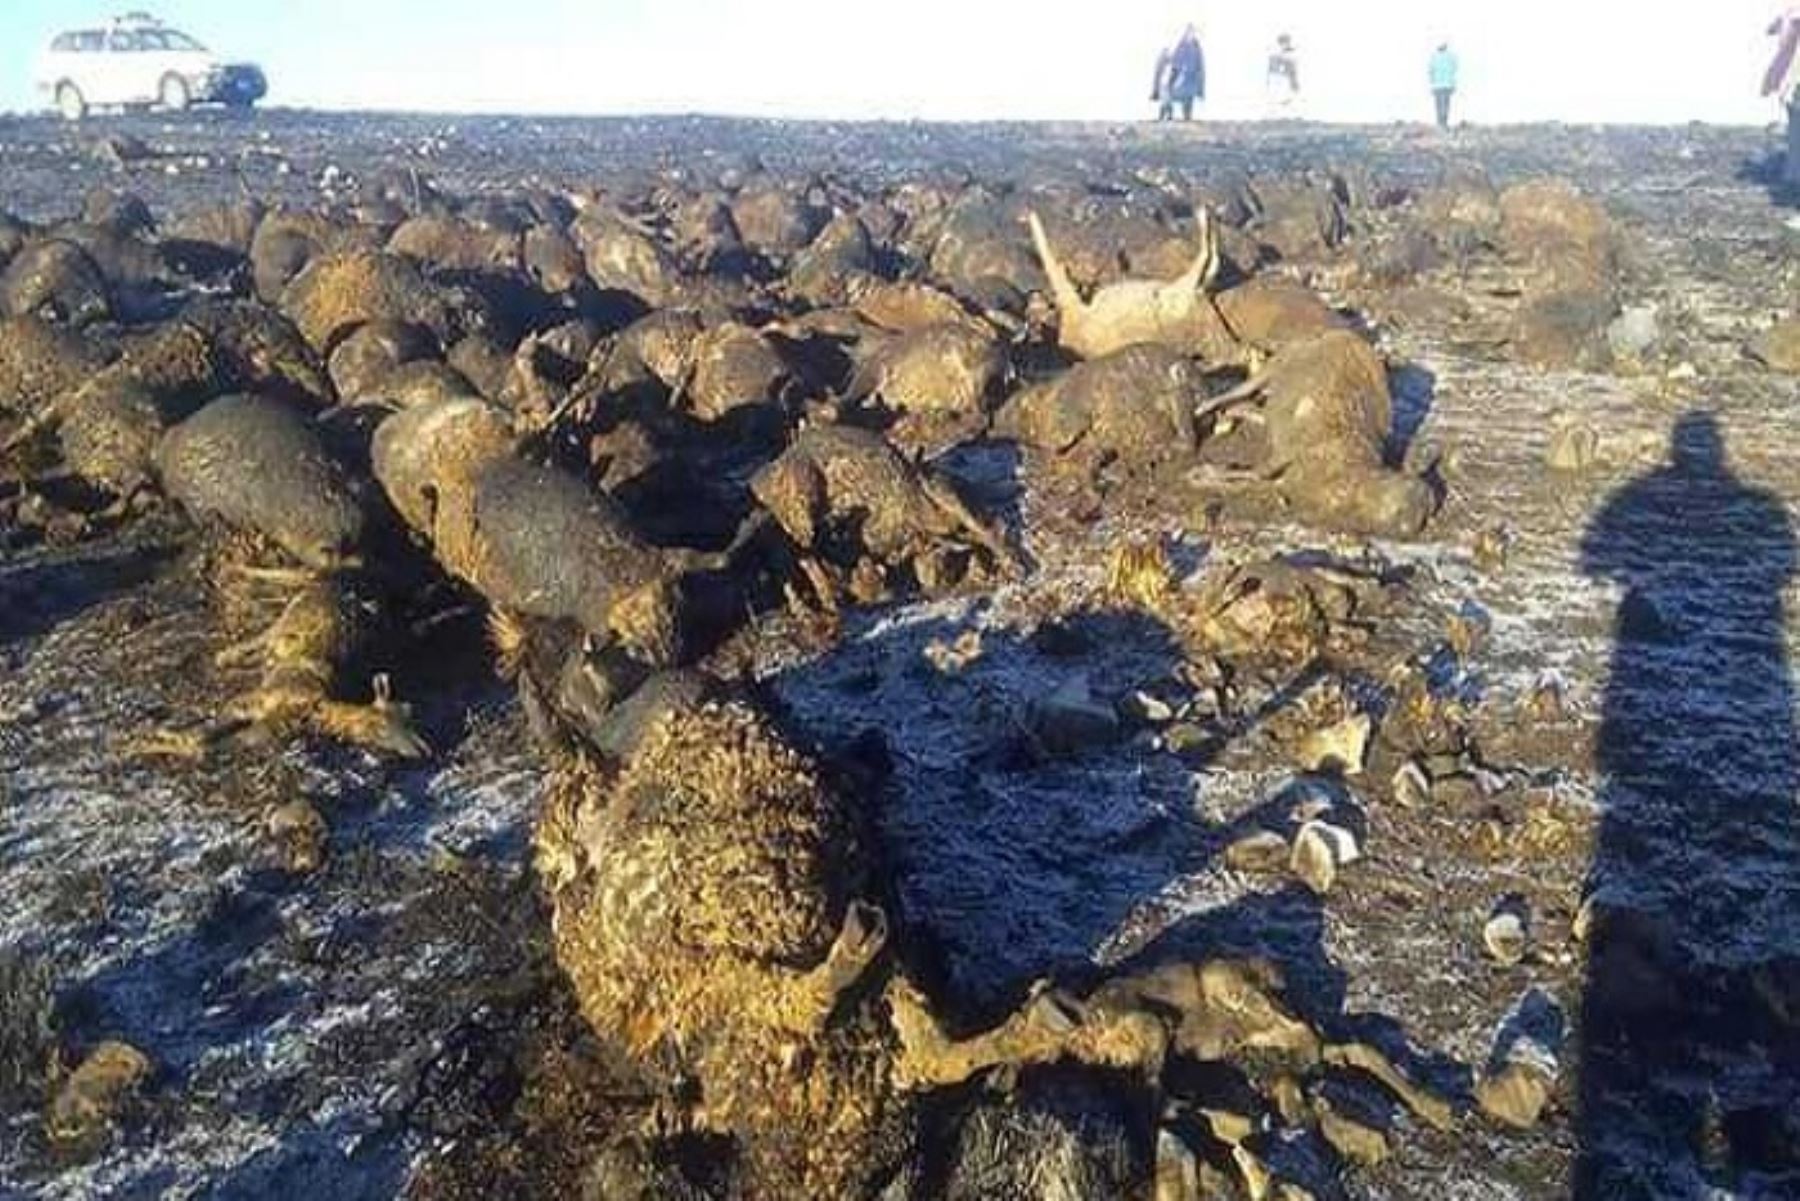 Cerca de doscientas ovejas murieron calcinadas en el incendio forestal que se registró en el distrito de Chicche, ubicado en la parte alta de la provincia de Huancayo, región Junín, informaron fuentes locales.